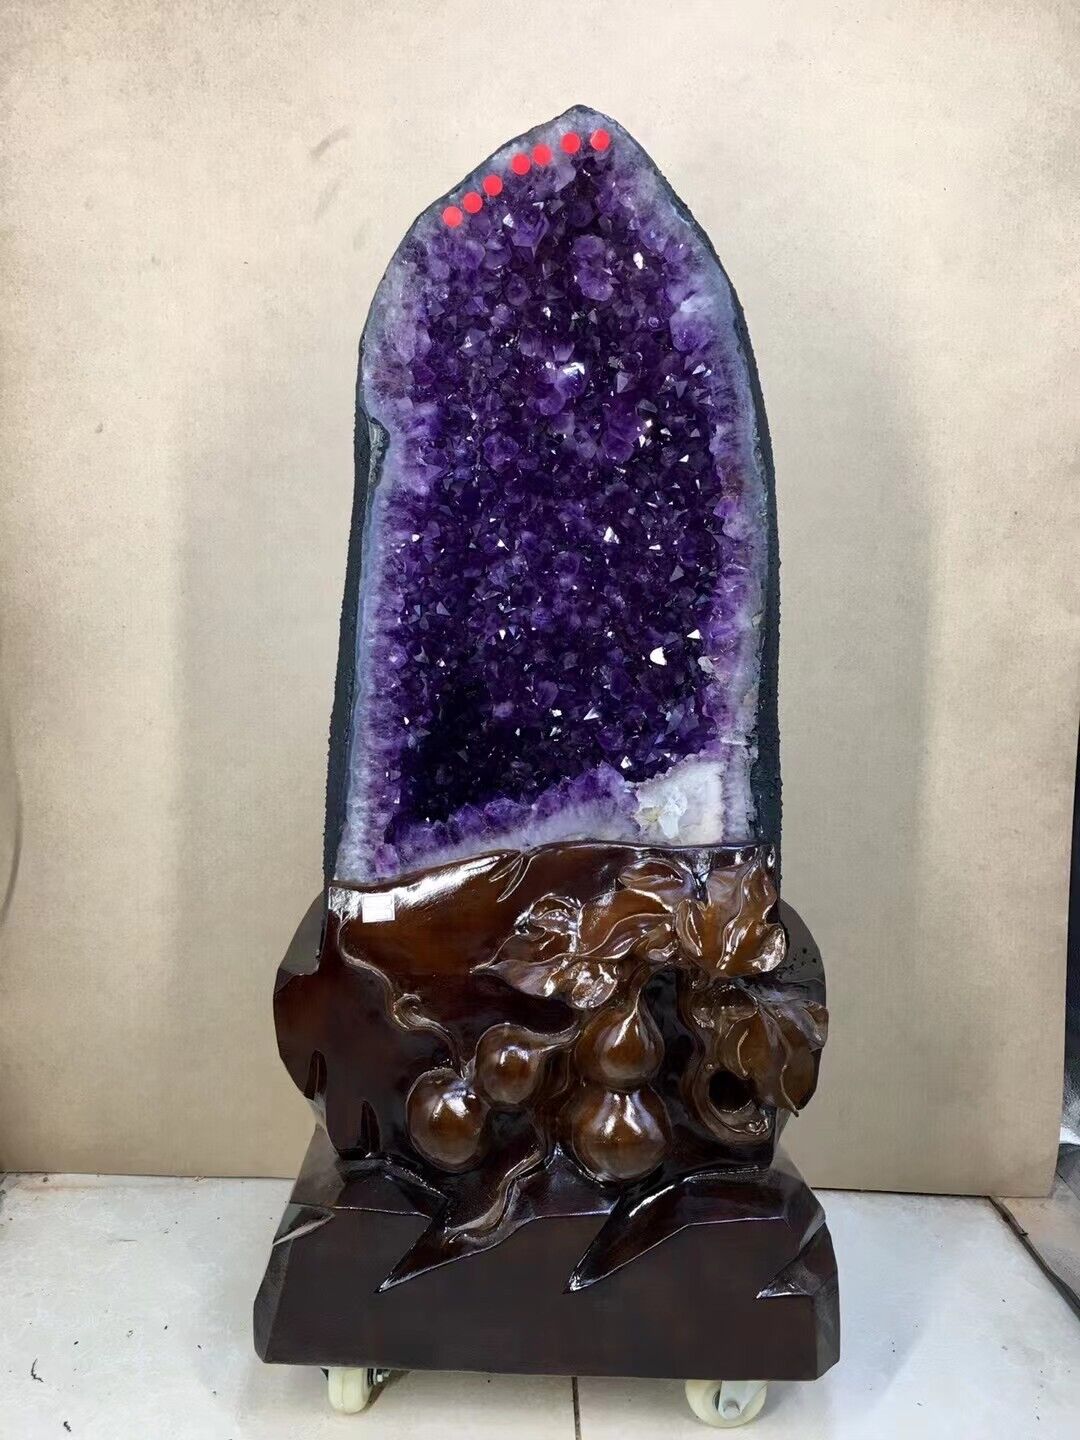 95kg Huge Natural amethyst Cluster purple Quartz Crystal Rare mineral Specimen